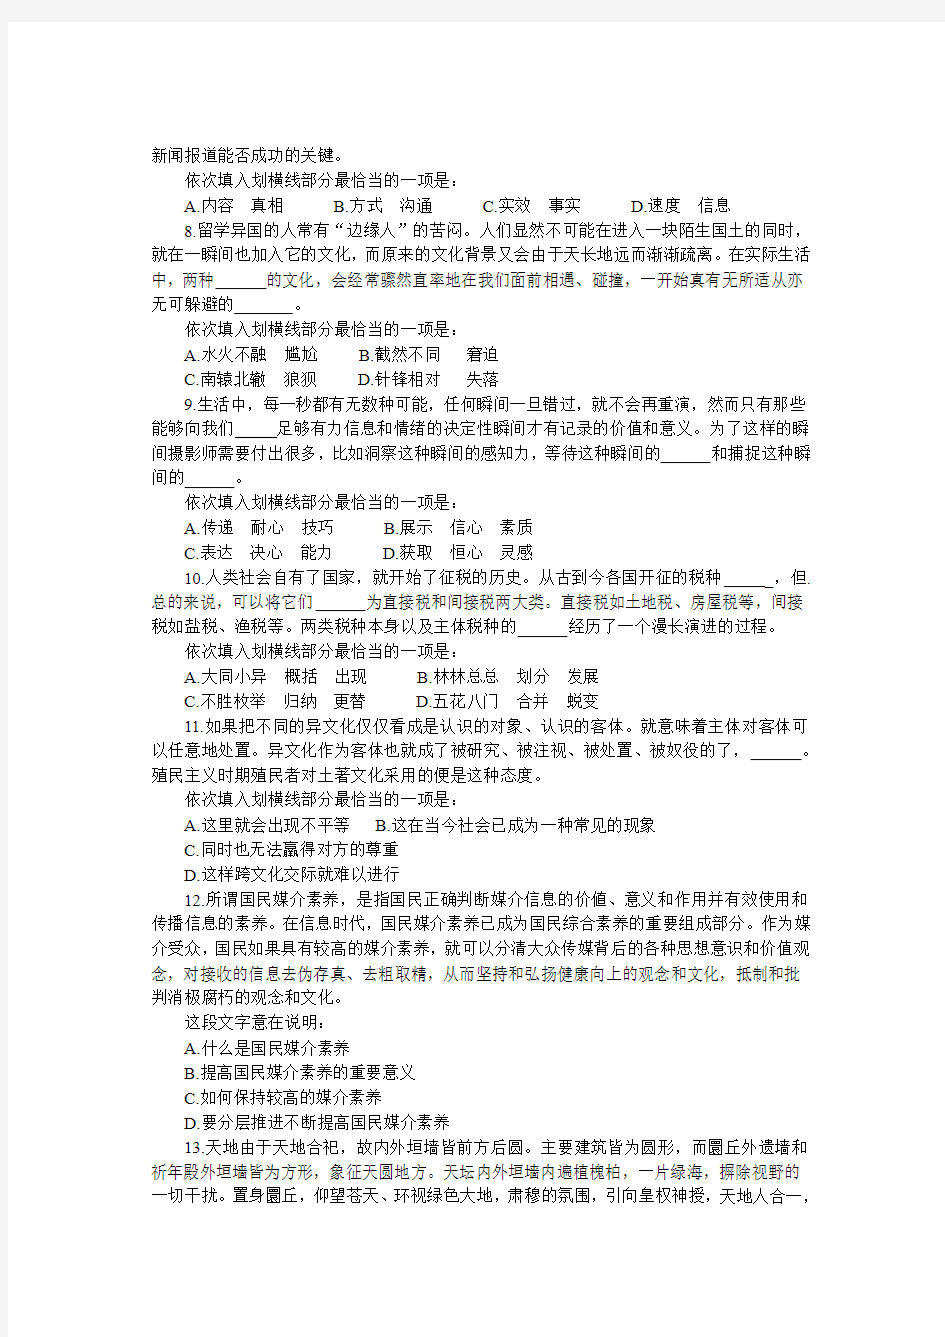 2013年云南省公务员考试行测真题及答案解析-完整版